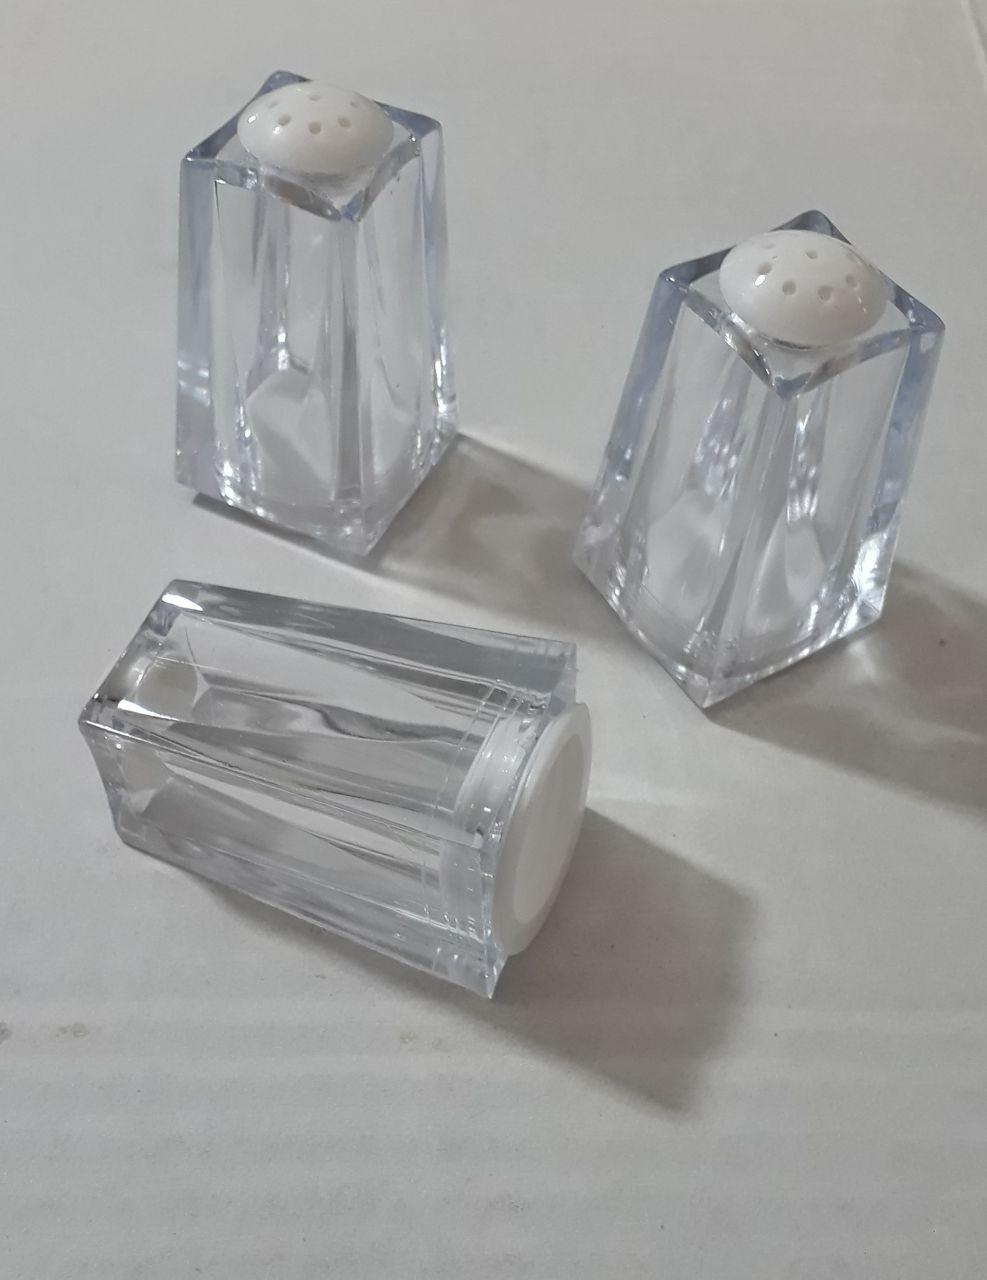 نمک پاش اکرولیک - پخش پلاستیک - پخش عمده انواع نمکپاش فانتزی کریستالی مناسب حراجی 10000 فروش 